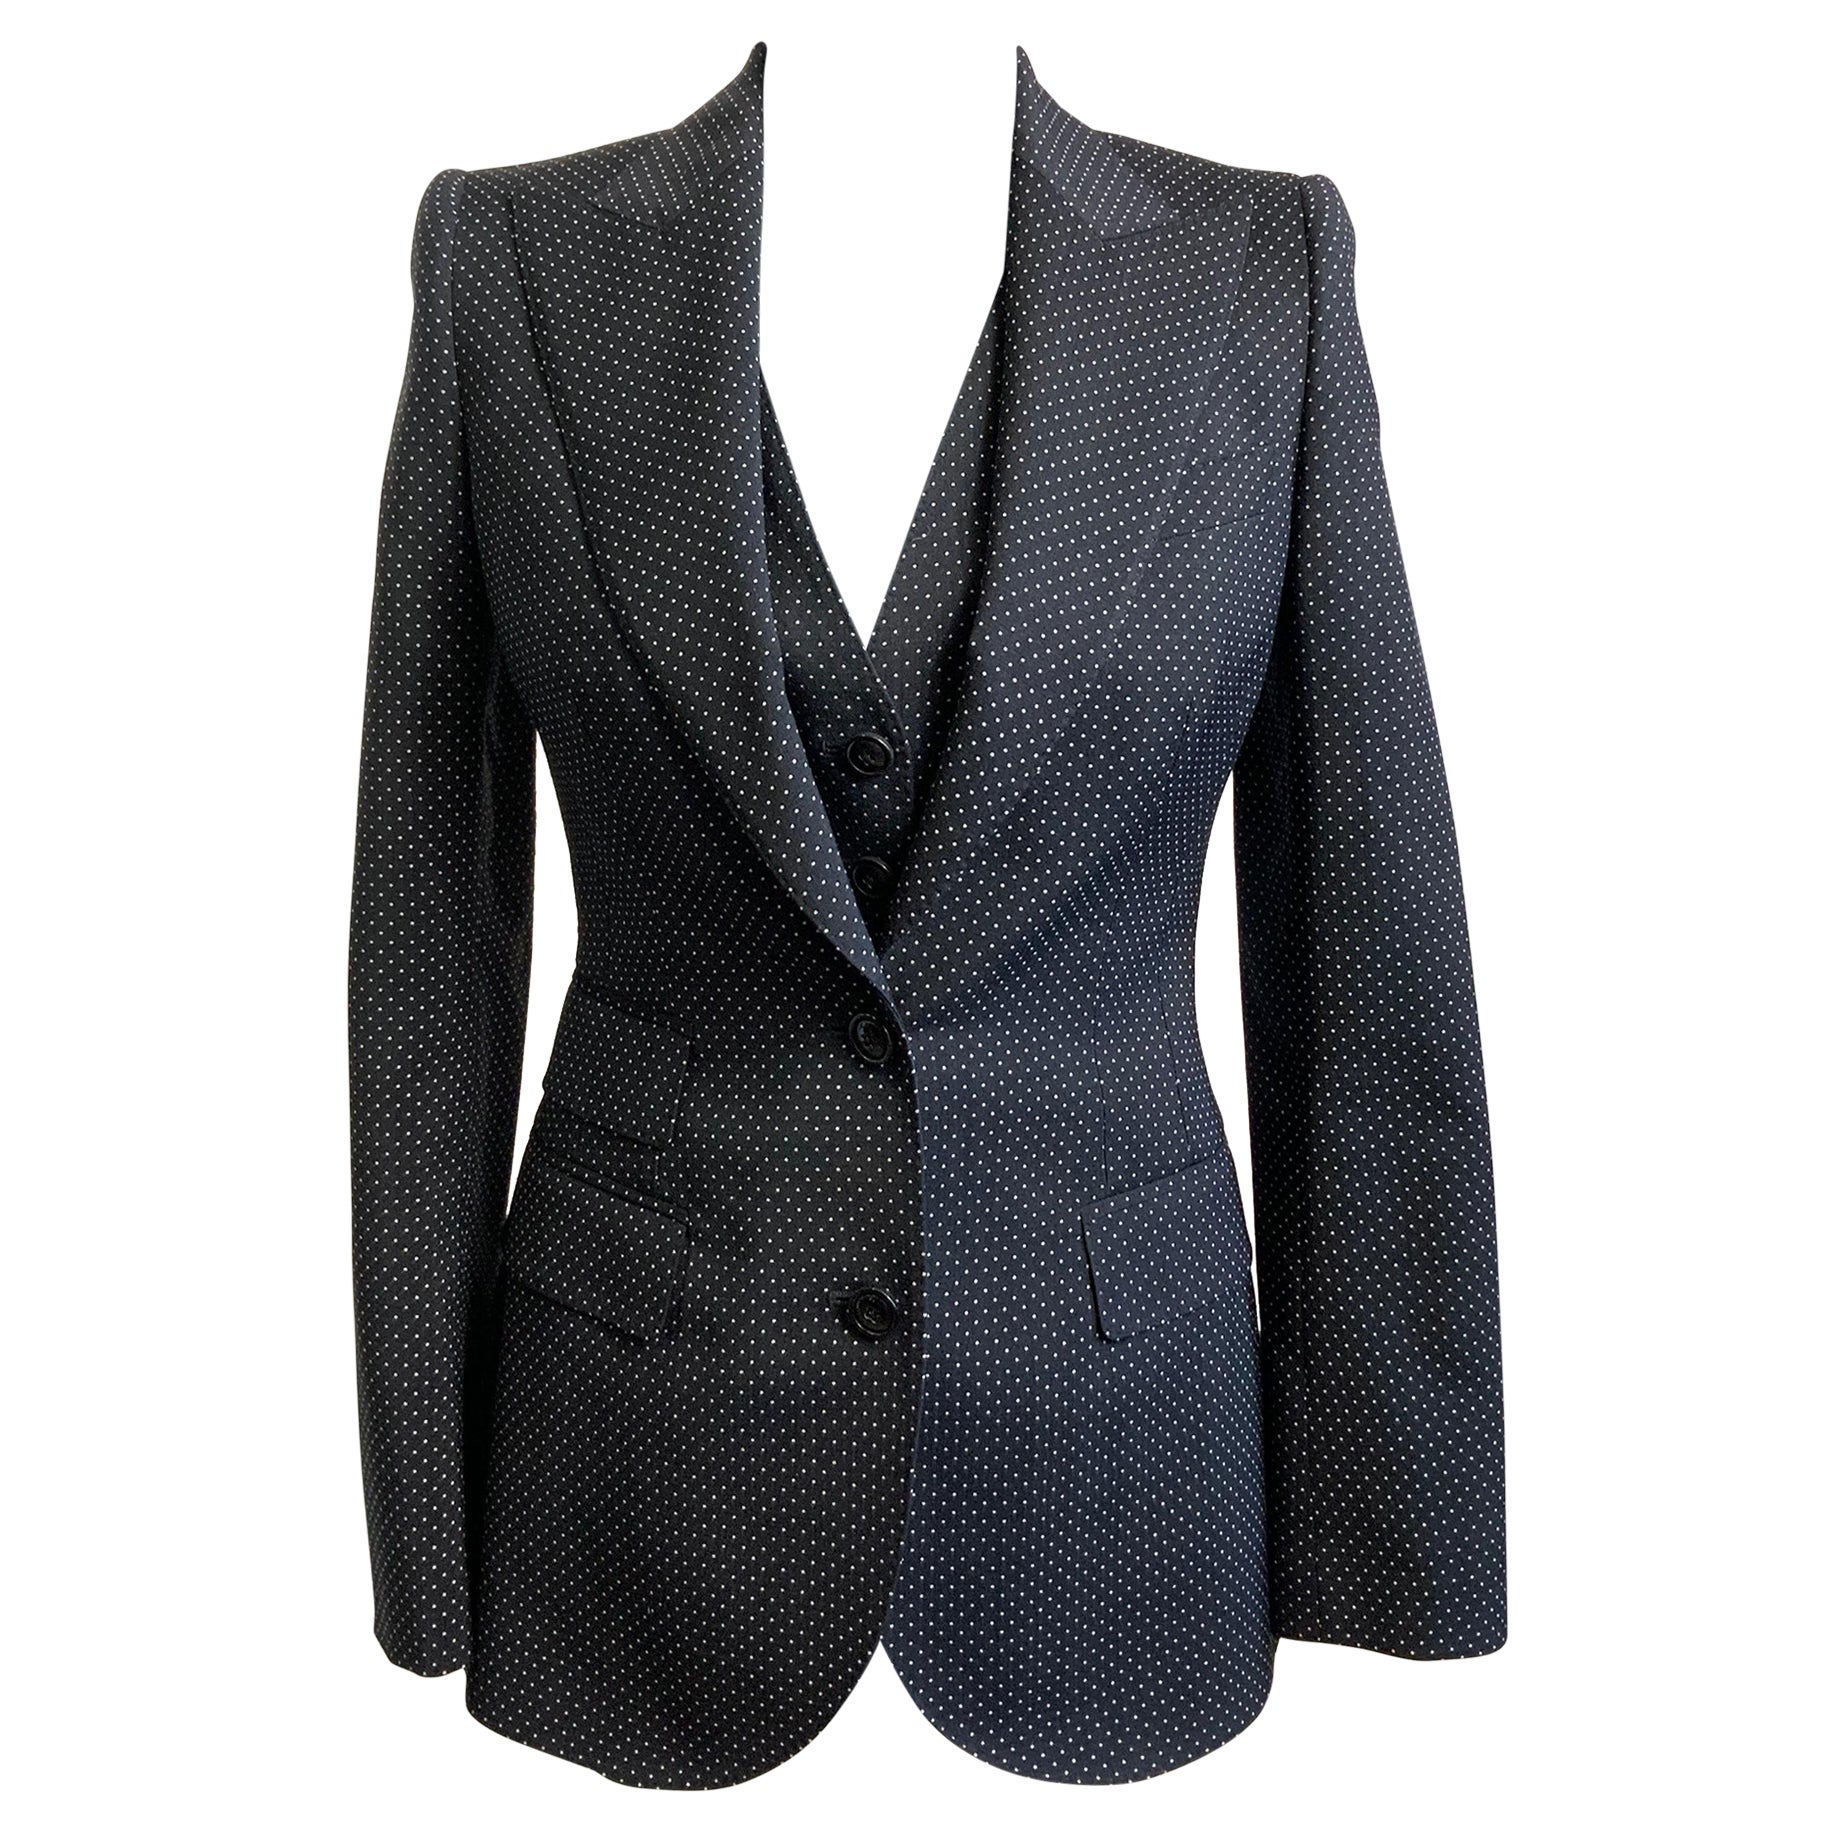 Dolce and Gabbana dots jacket + vest set. For Sale